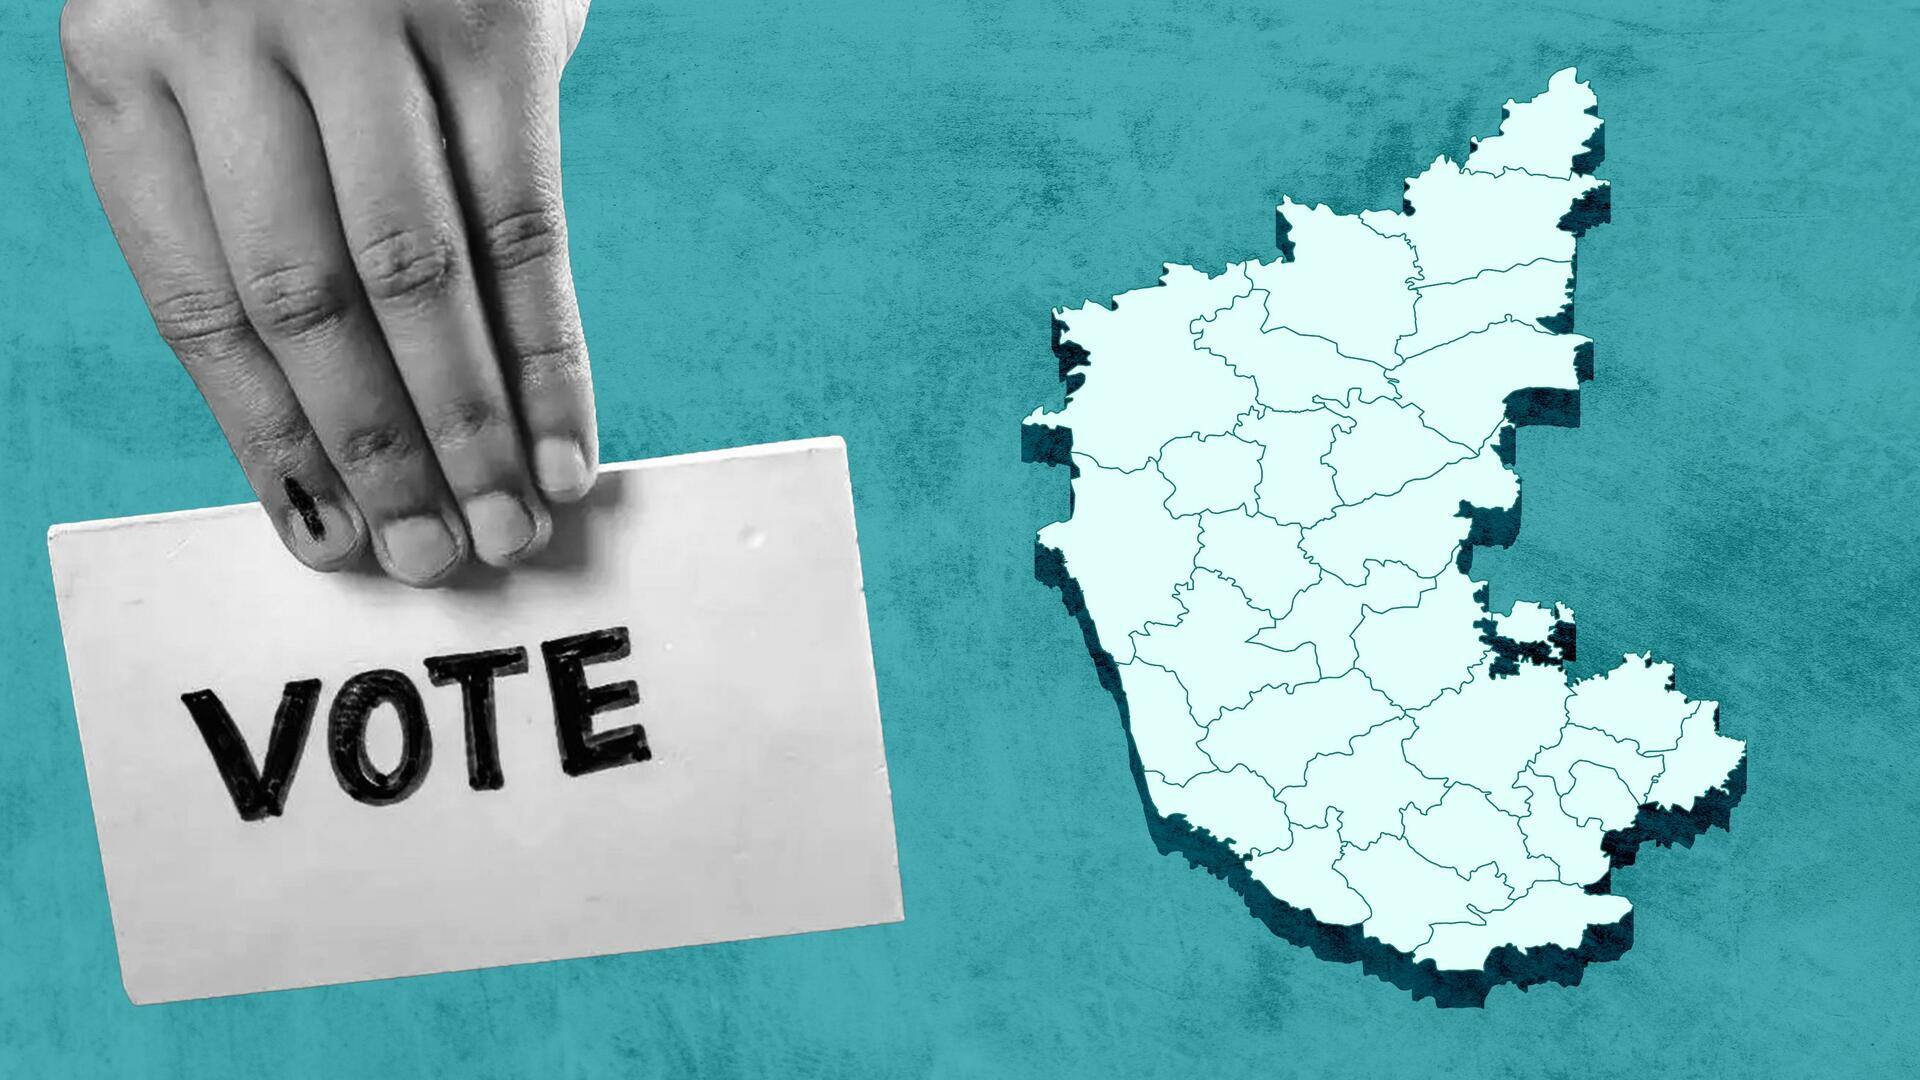 कर्नाटक विधानसभा चुनाव के प्रमुख मुद्दे क्या हैं?